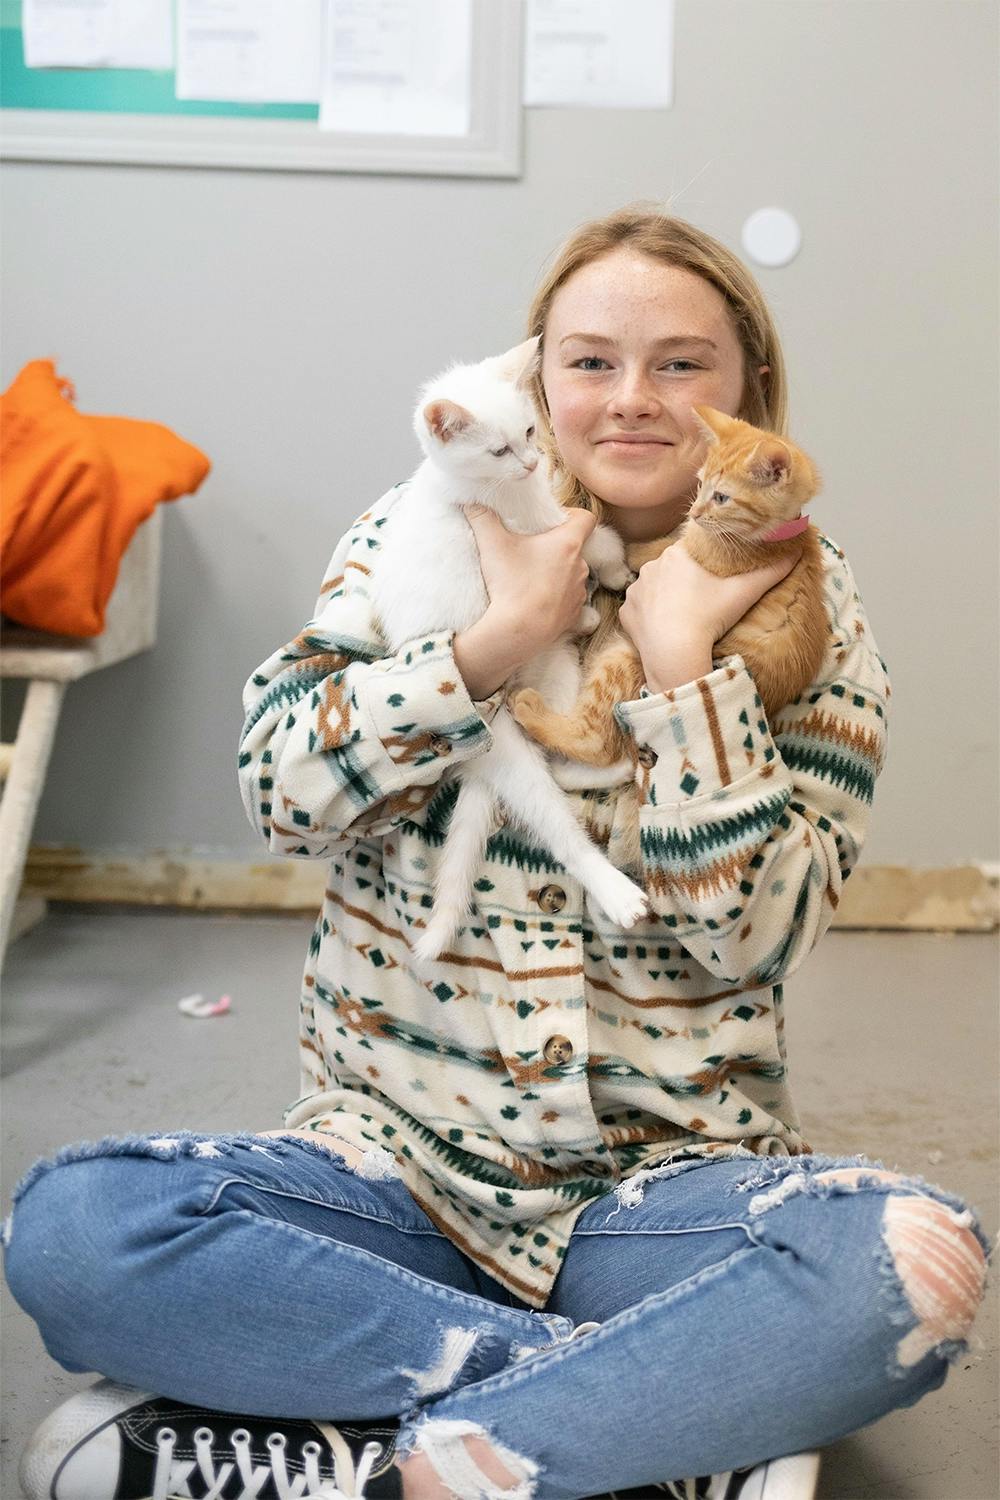 Volunteer Holding Two Kittens